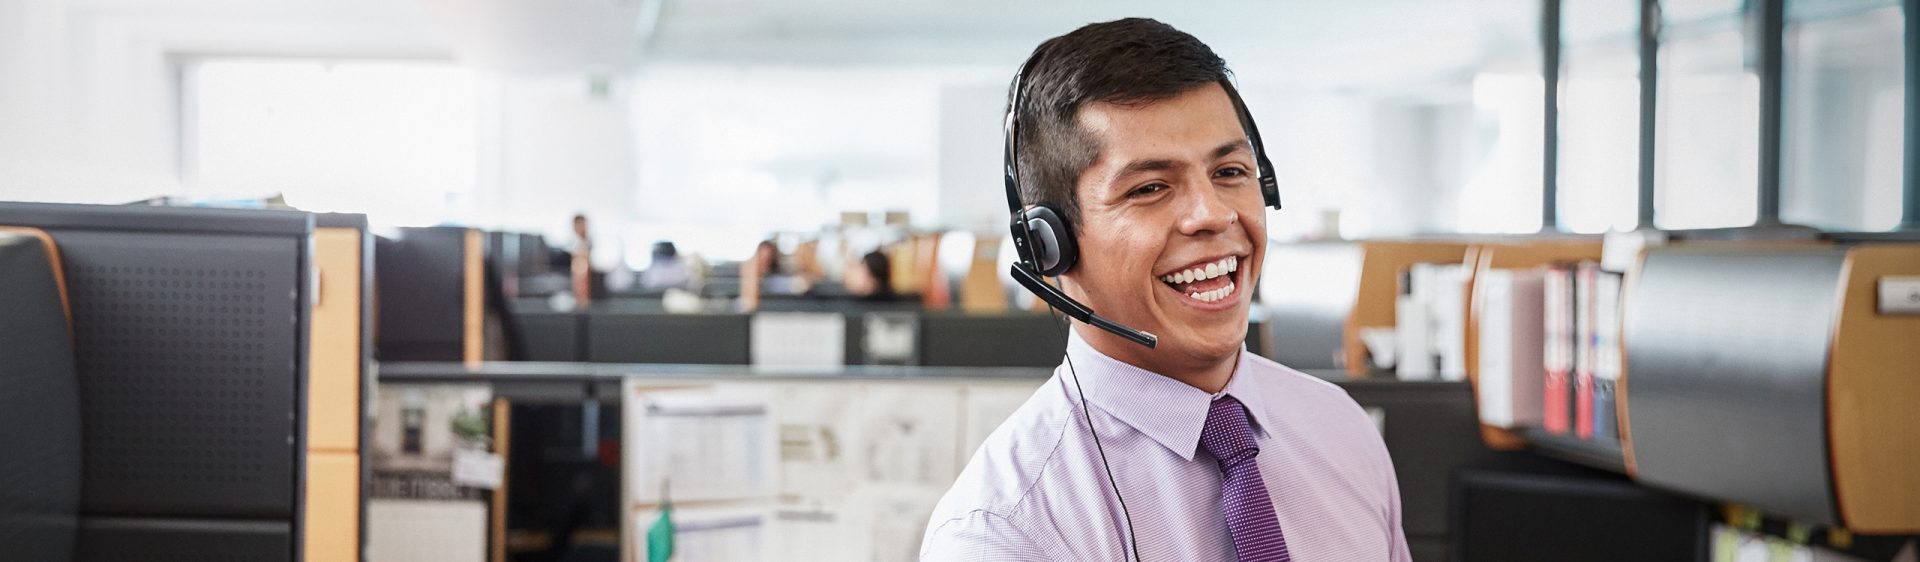 Das Bild zeigt einen jungen Mann, der in der Kundenbetreuung arbeitet, in einem Büro sitzt und ein Headset trägt.